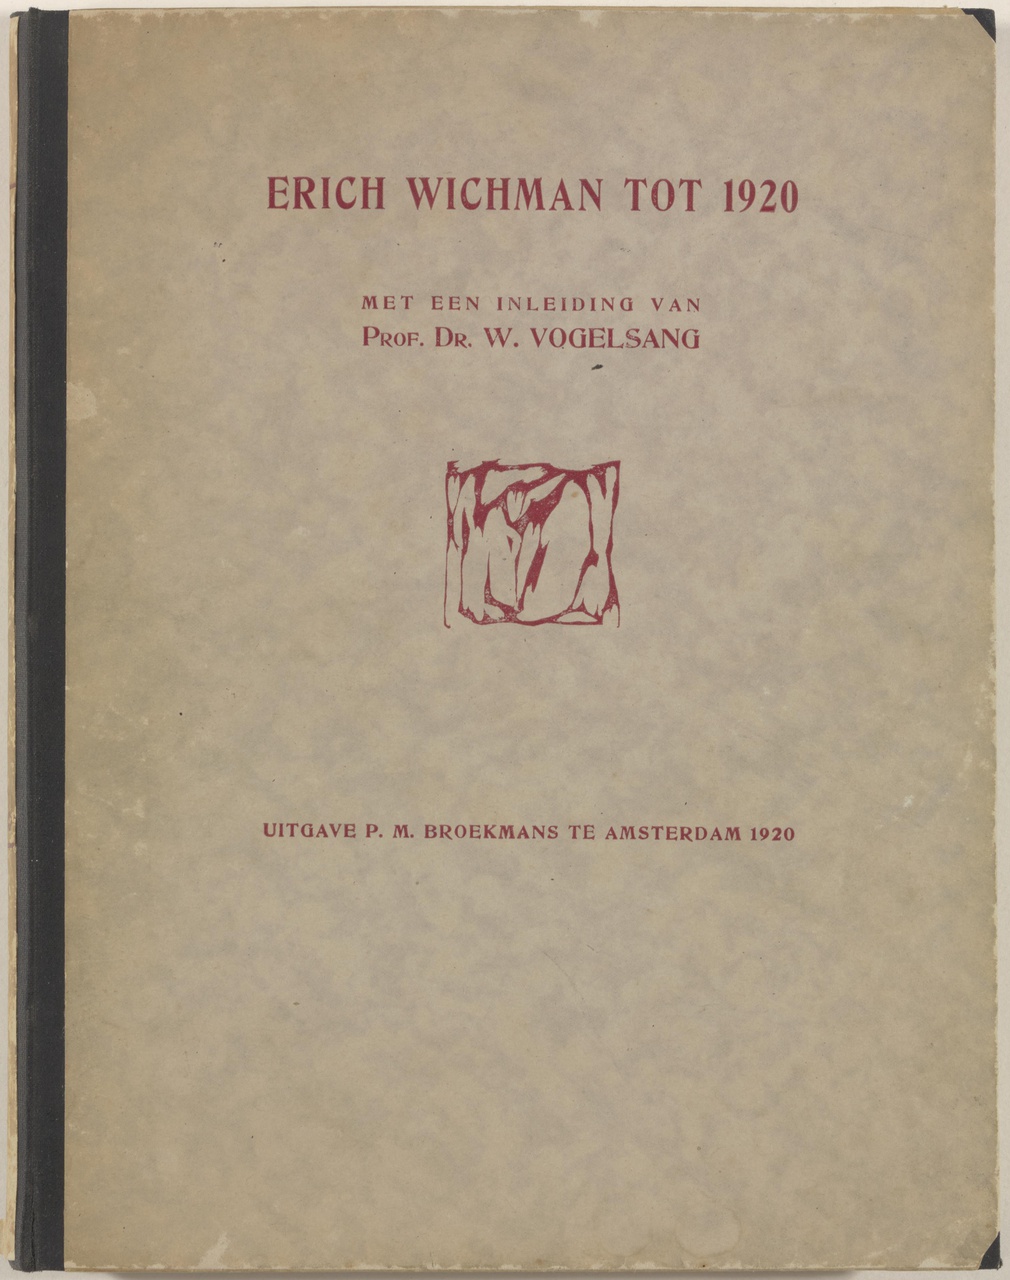 Erich Wichman tot 1920